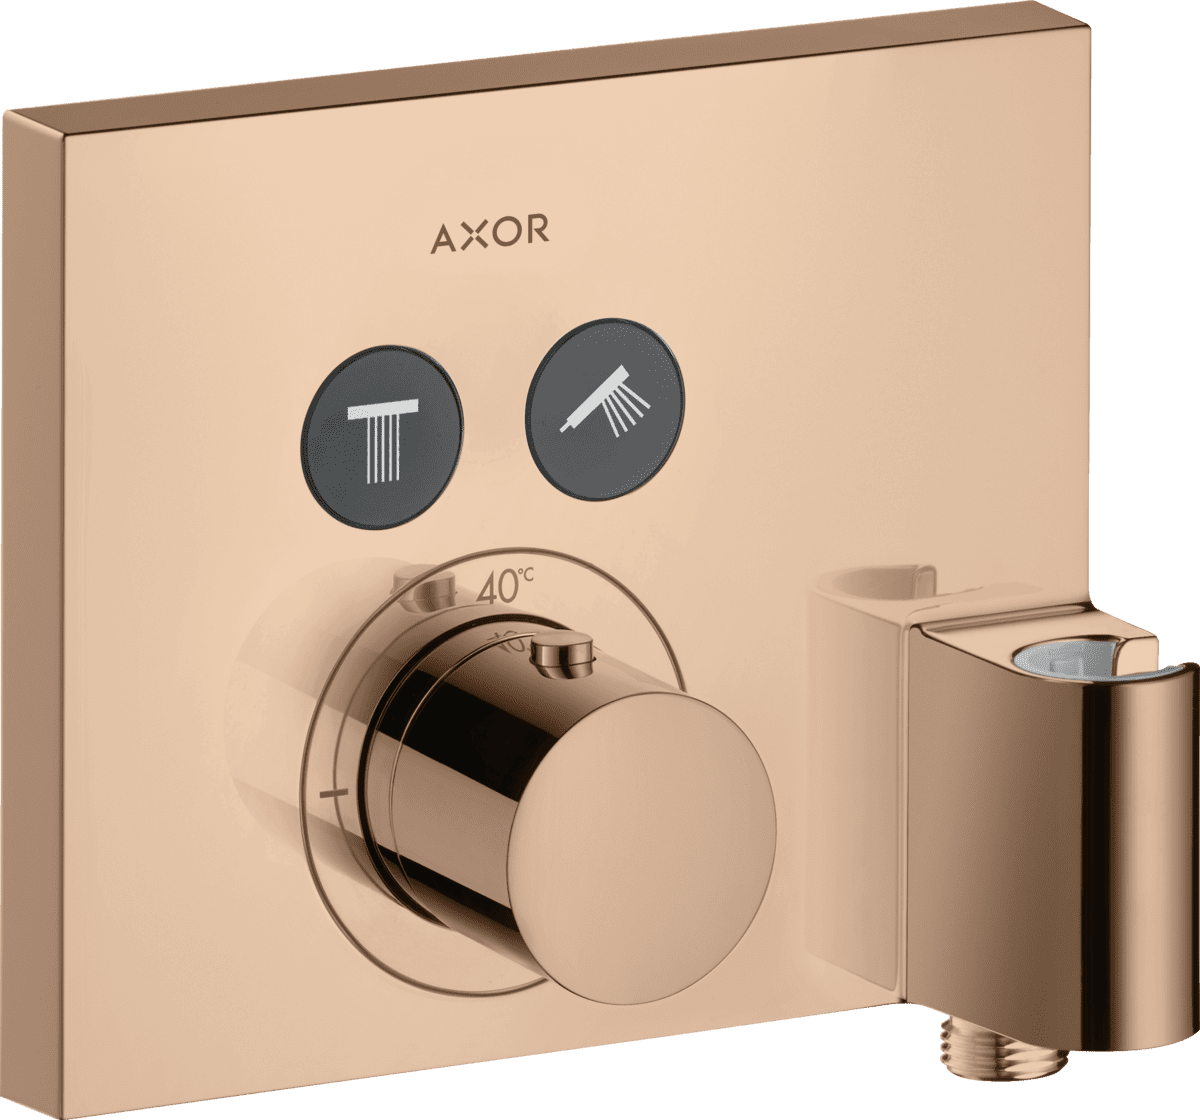 HANSGROHE AXOR ShowerSelect Termostat ankastre montaj, kare, 2 çıkış ve askılı gönye çıkış ile #36712300 - Parlak Kırmızı Altın resmi